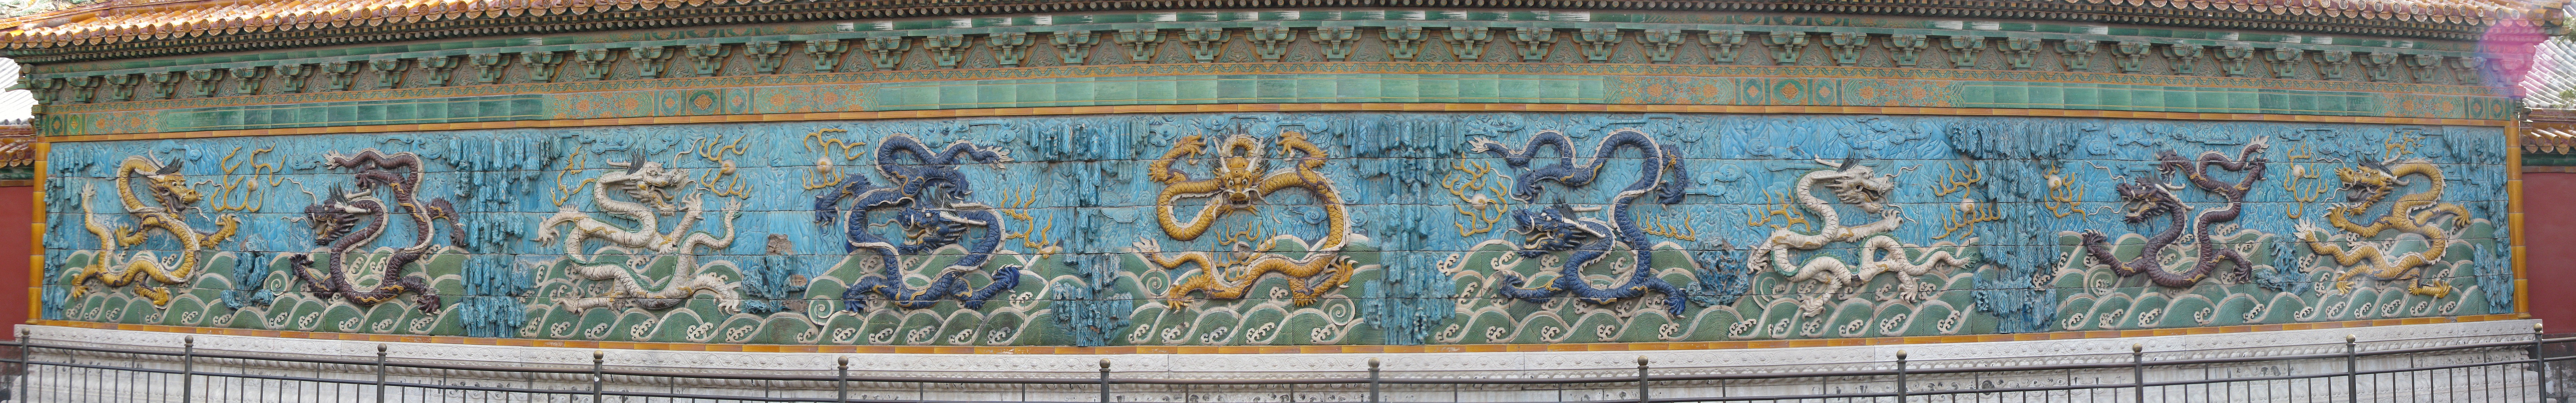 Beijing_Forbidden_city_glazed-tile_nine_dragons_screen%28small%29%282008-08%29.jpg